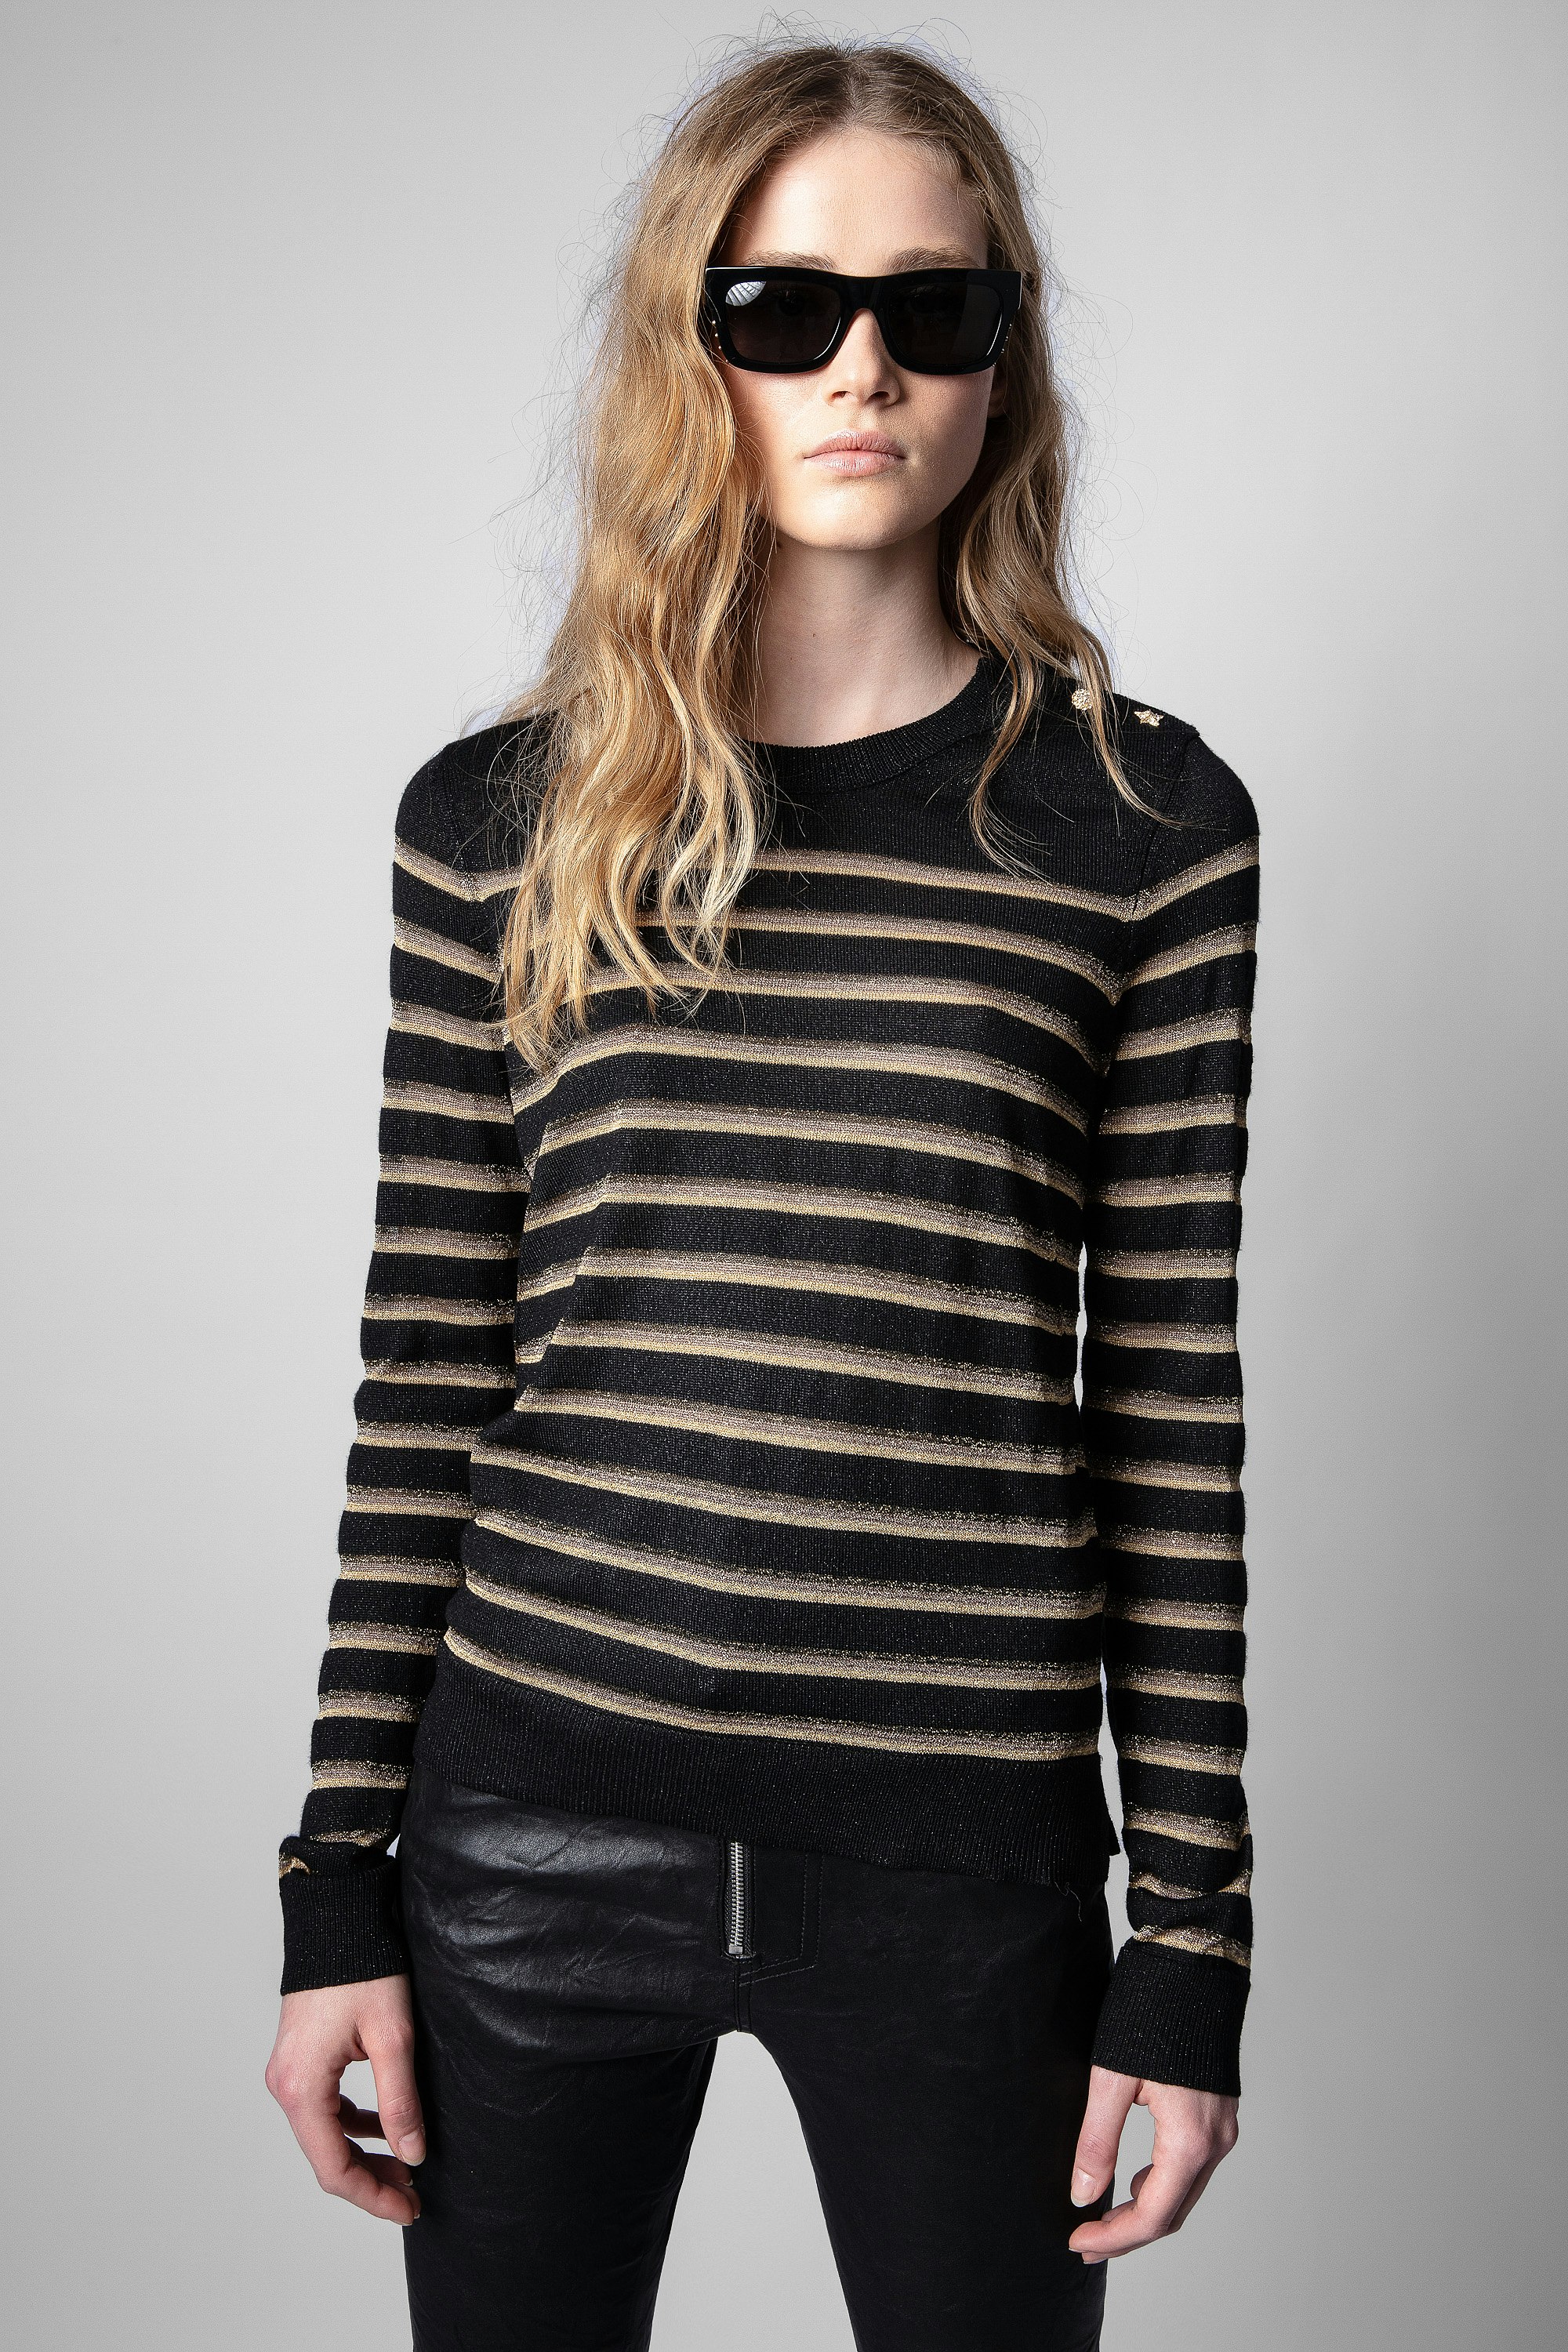 Miss Stripes Sweater 